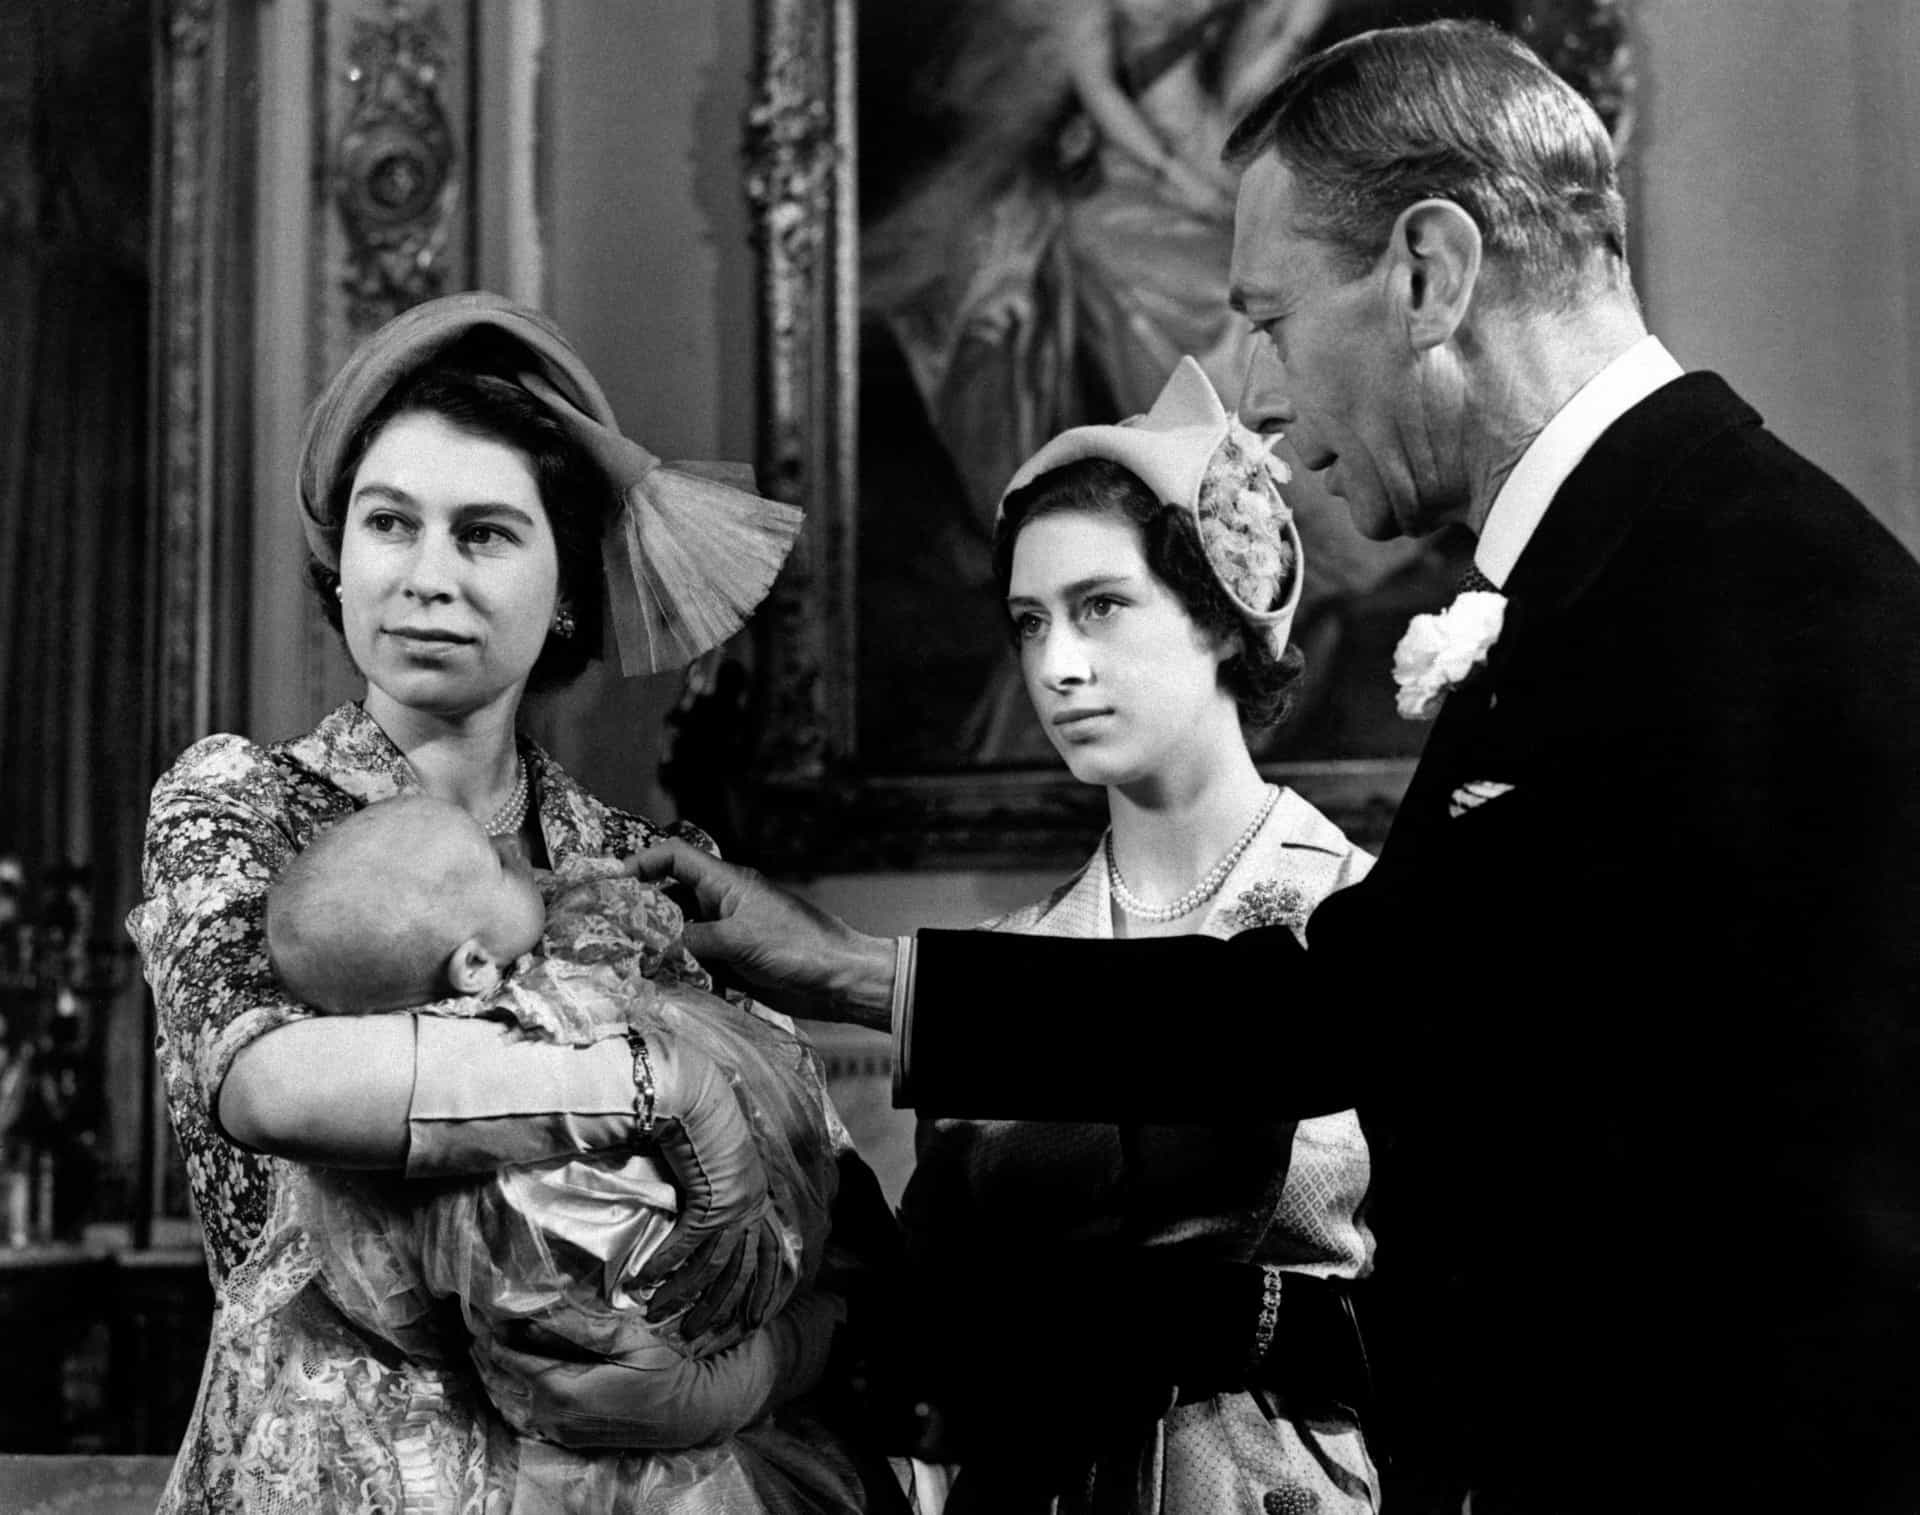 Elisabeth wiegt ihr zweites Kind, Prinzessin Anne, nach der Taufe des Babys im Buckingham Palace im Jahr 1950. Tante Prinzessin Margaret und Großvater König Georg VI. schauen zu.